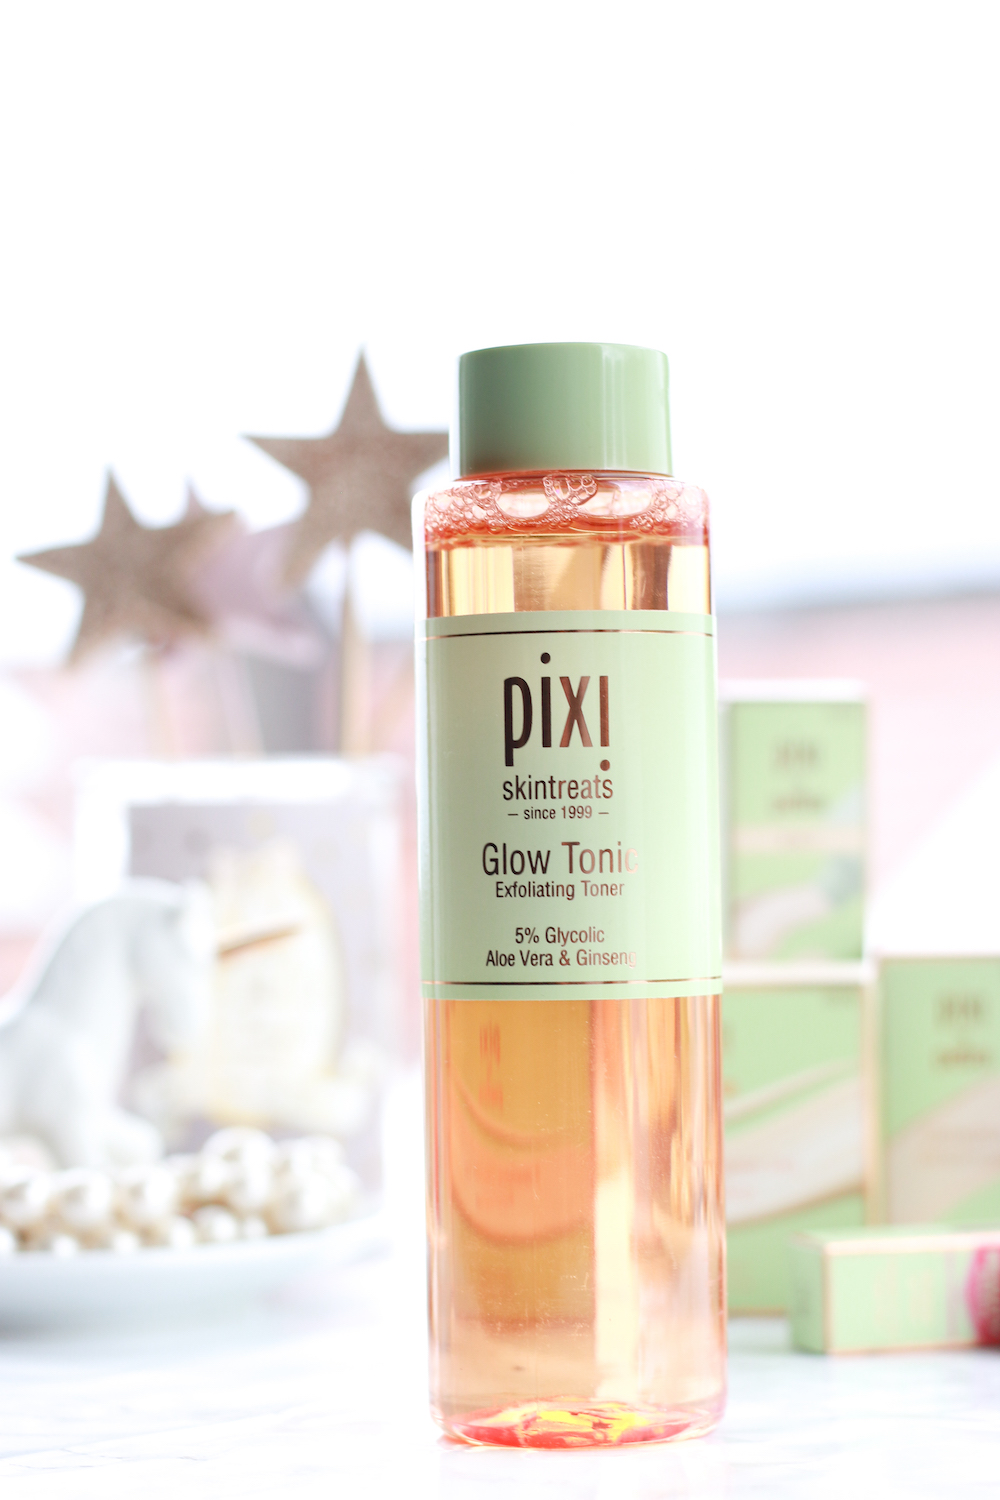 pixi-skintreats-glow-tonic-review-beauty-blog-deutschland